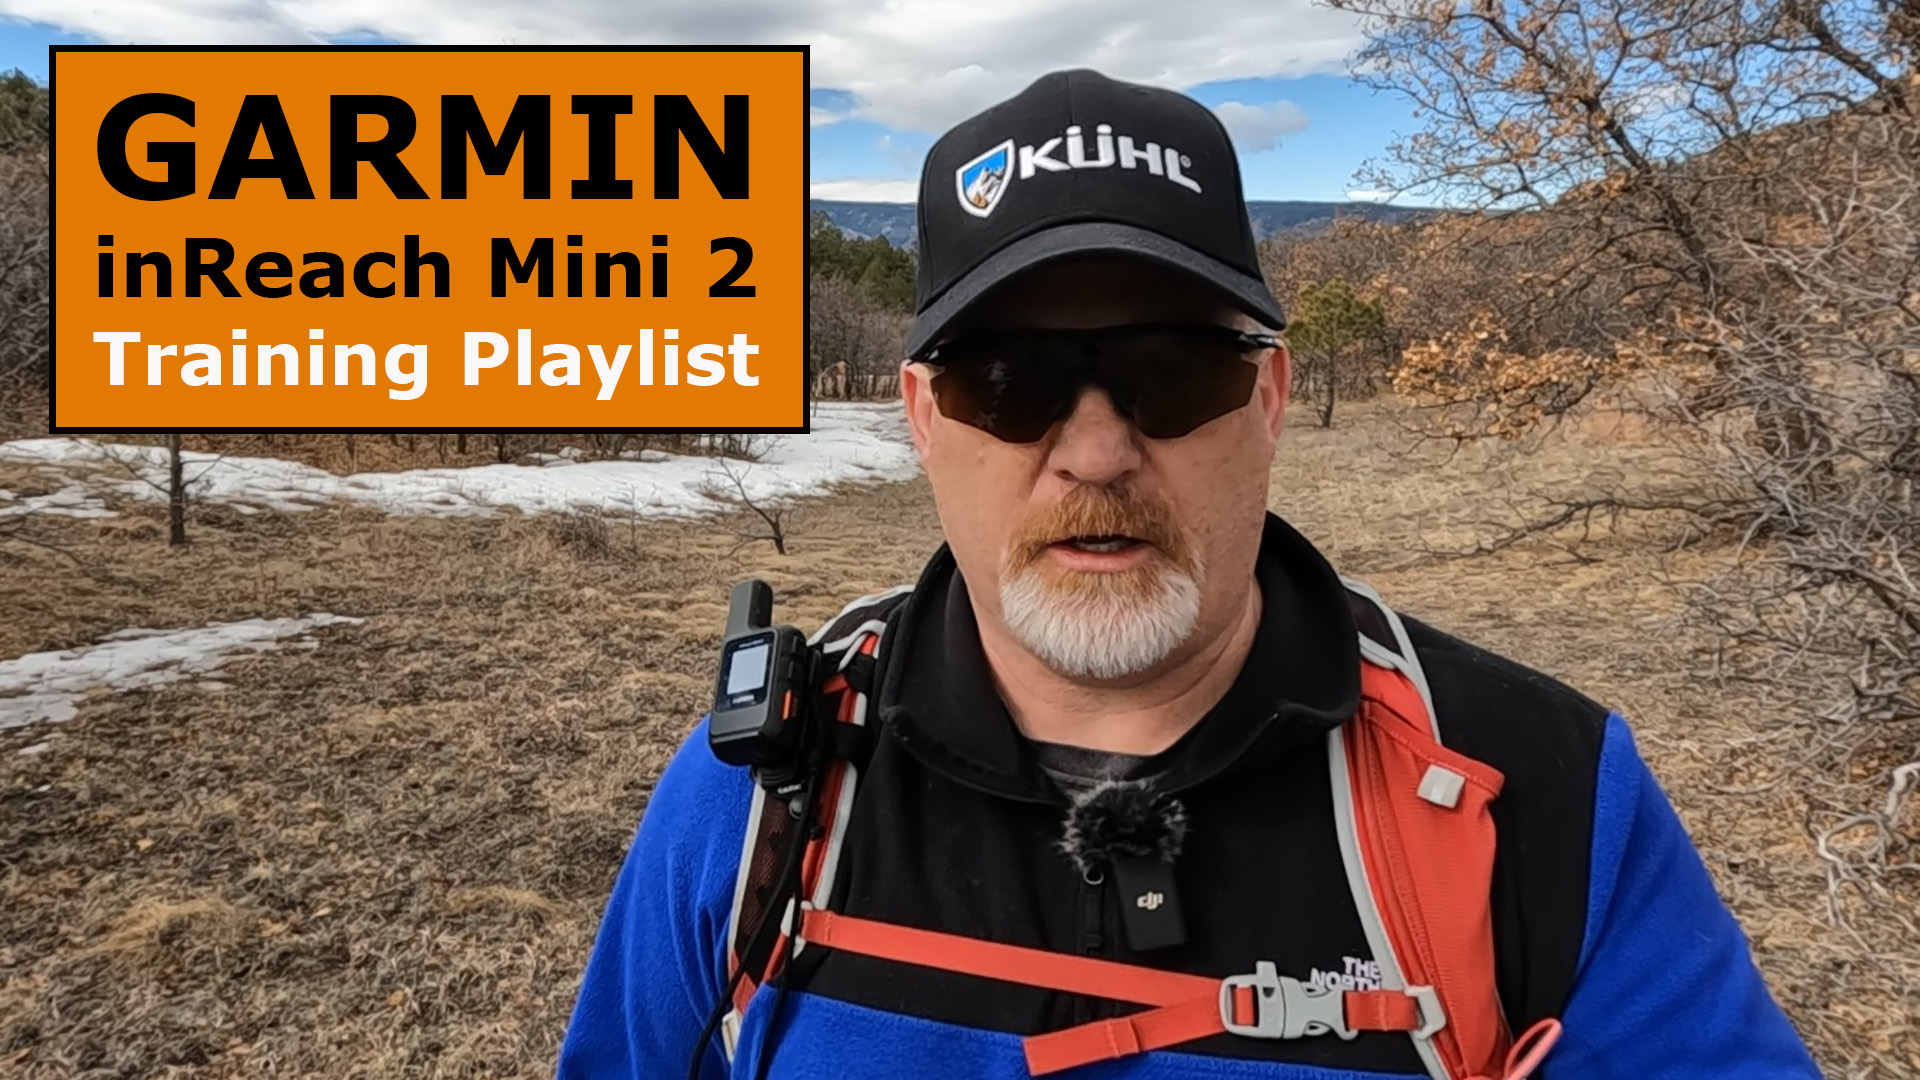 Garmin inReach Mini 2 Training Playlist